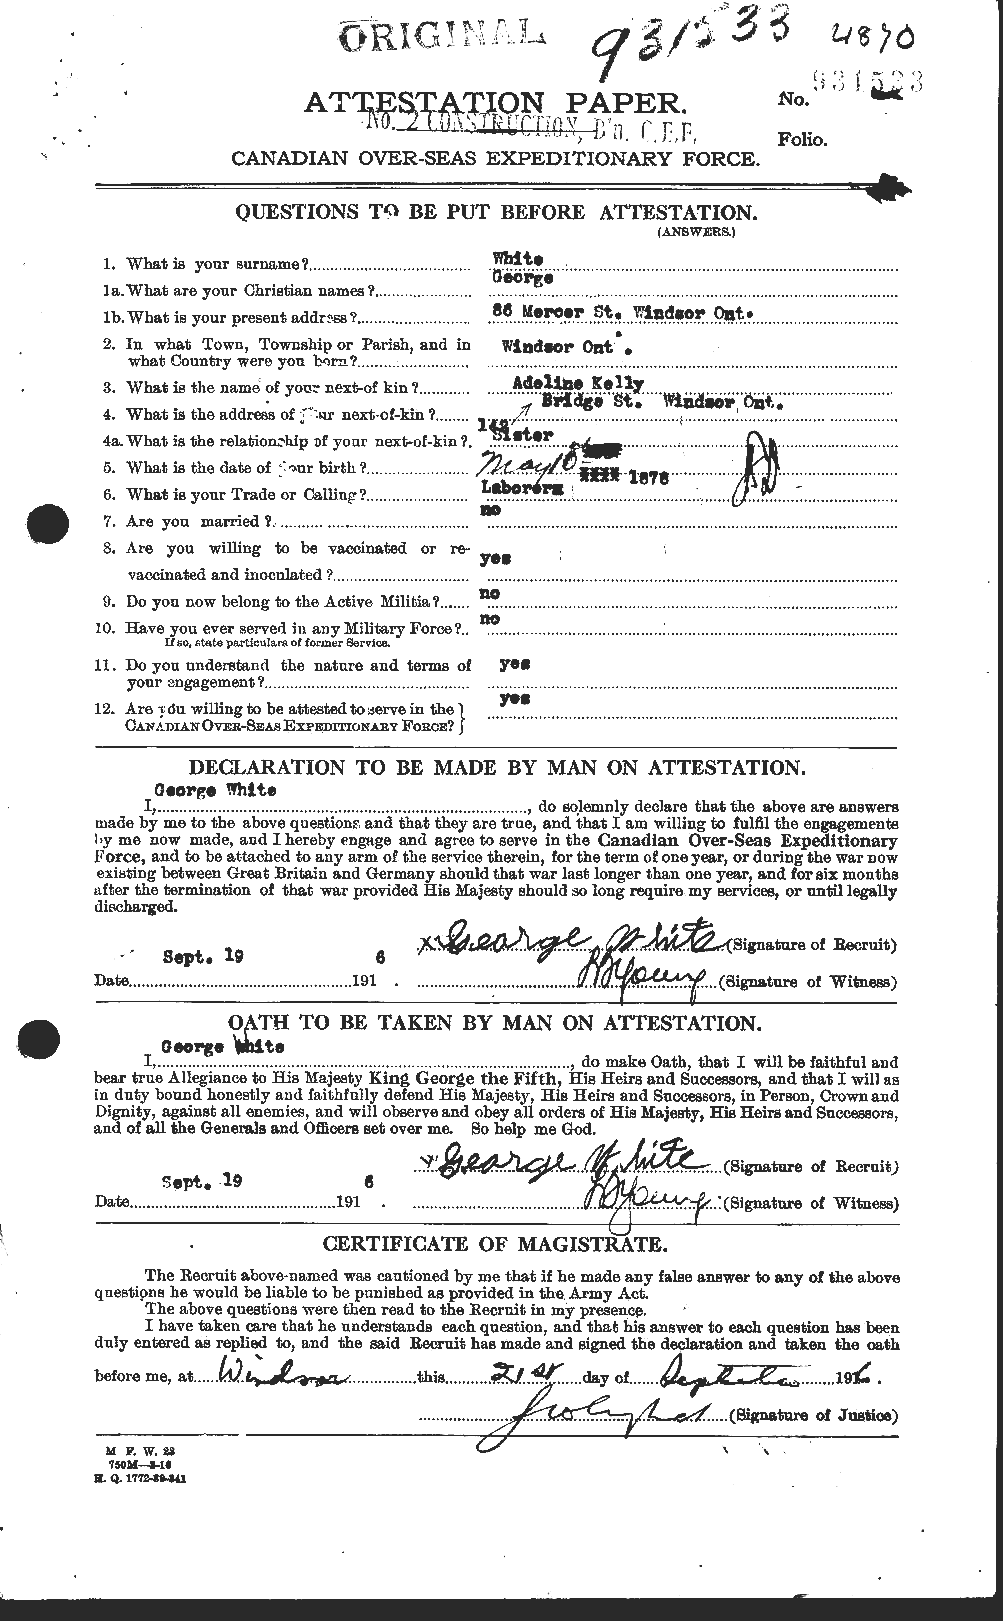 Dossiers du Personnel de la Première Guerre mondiale - CEC 669458a